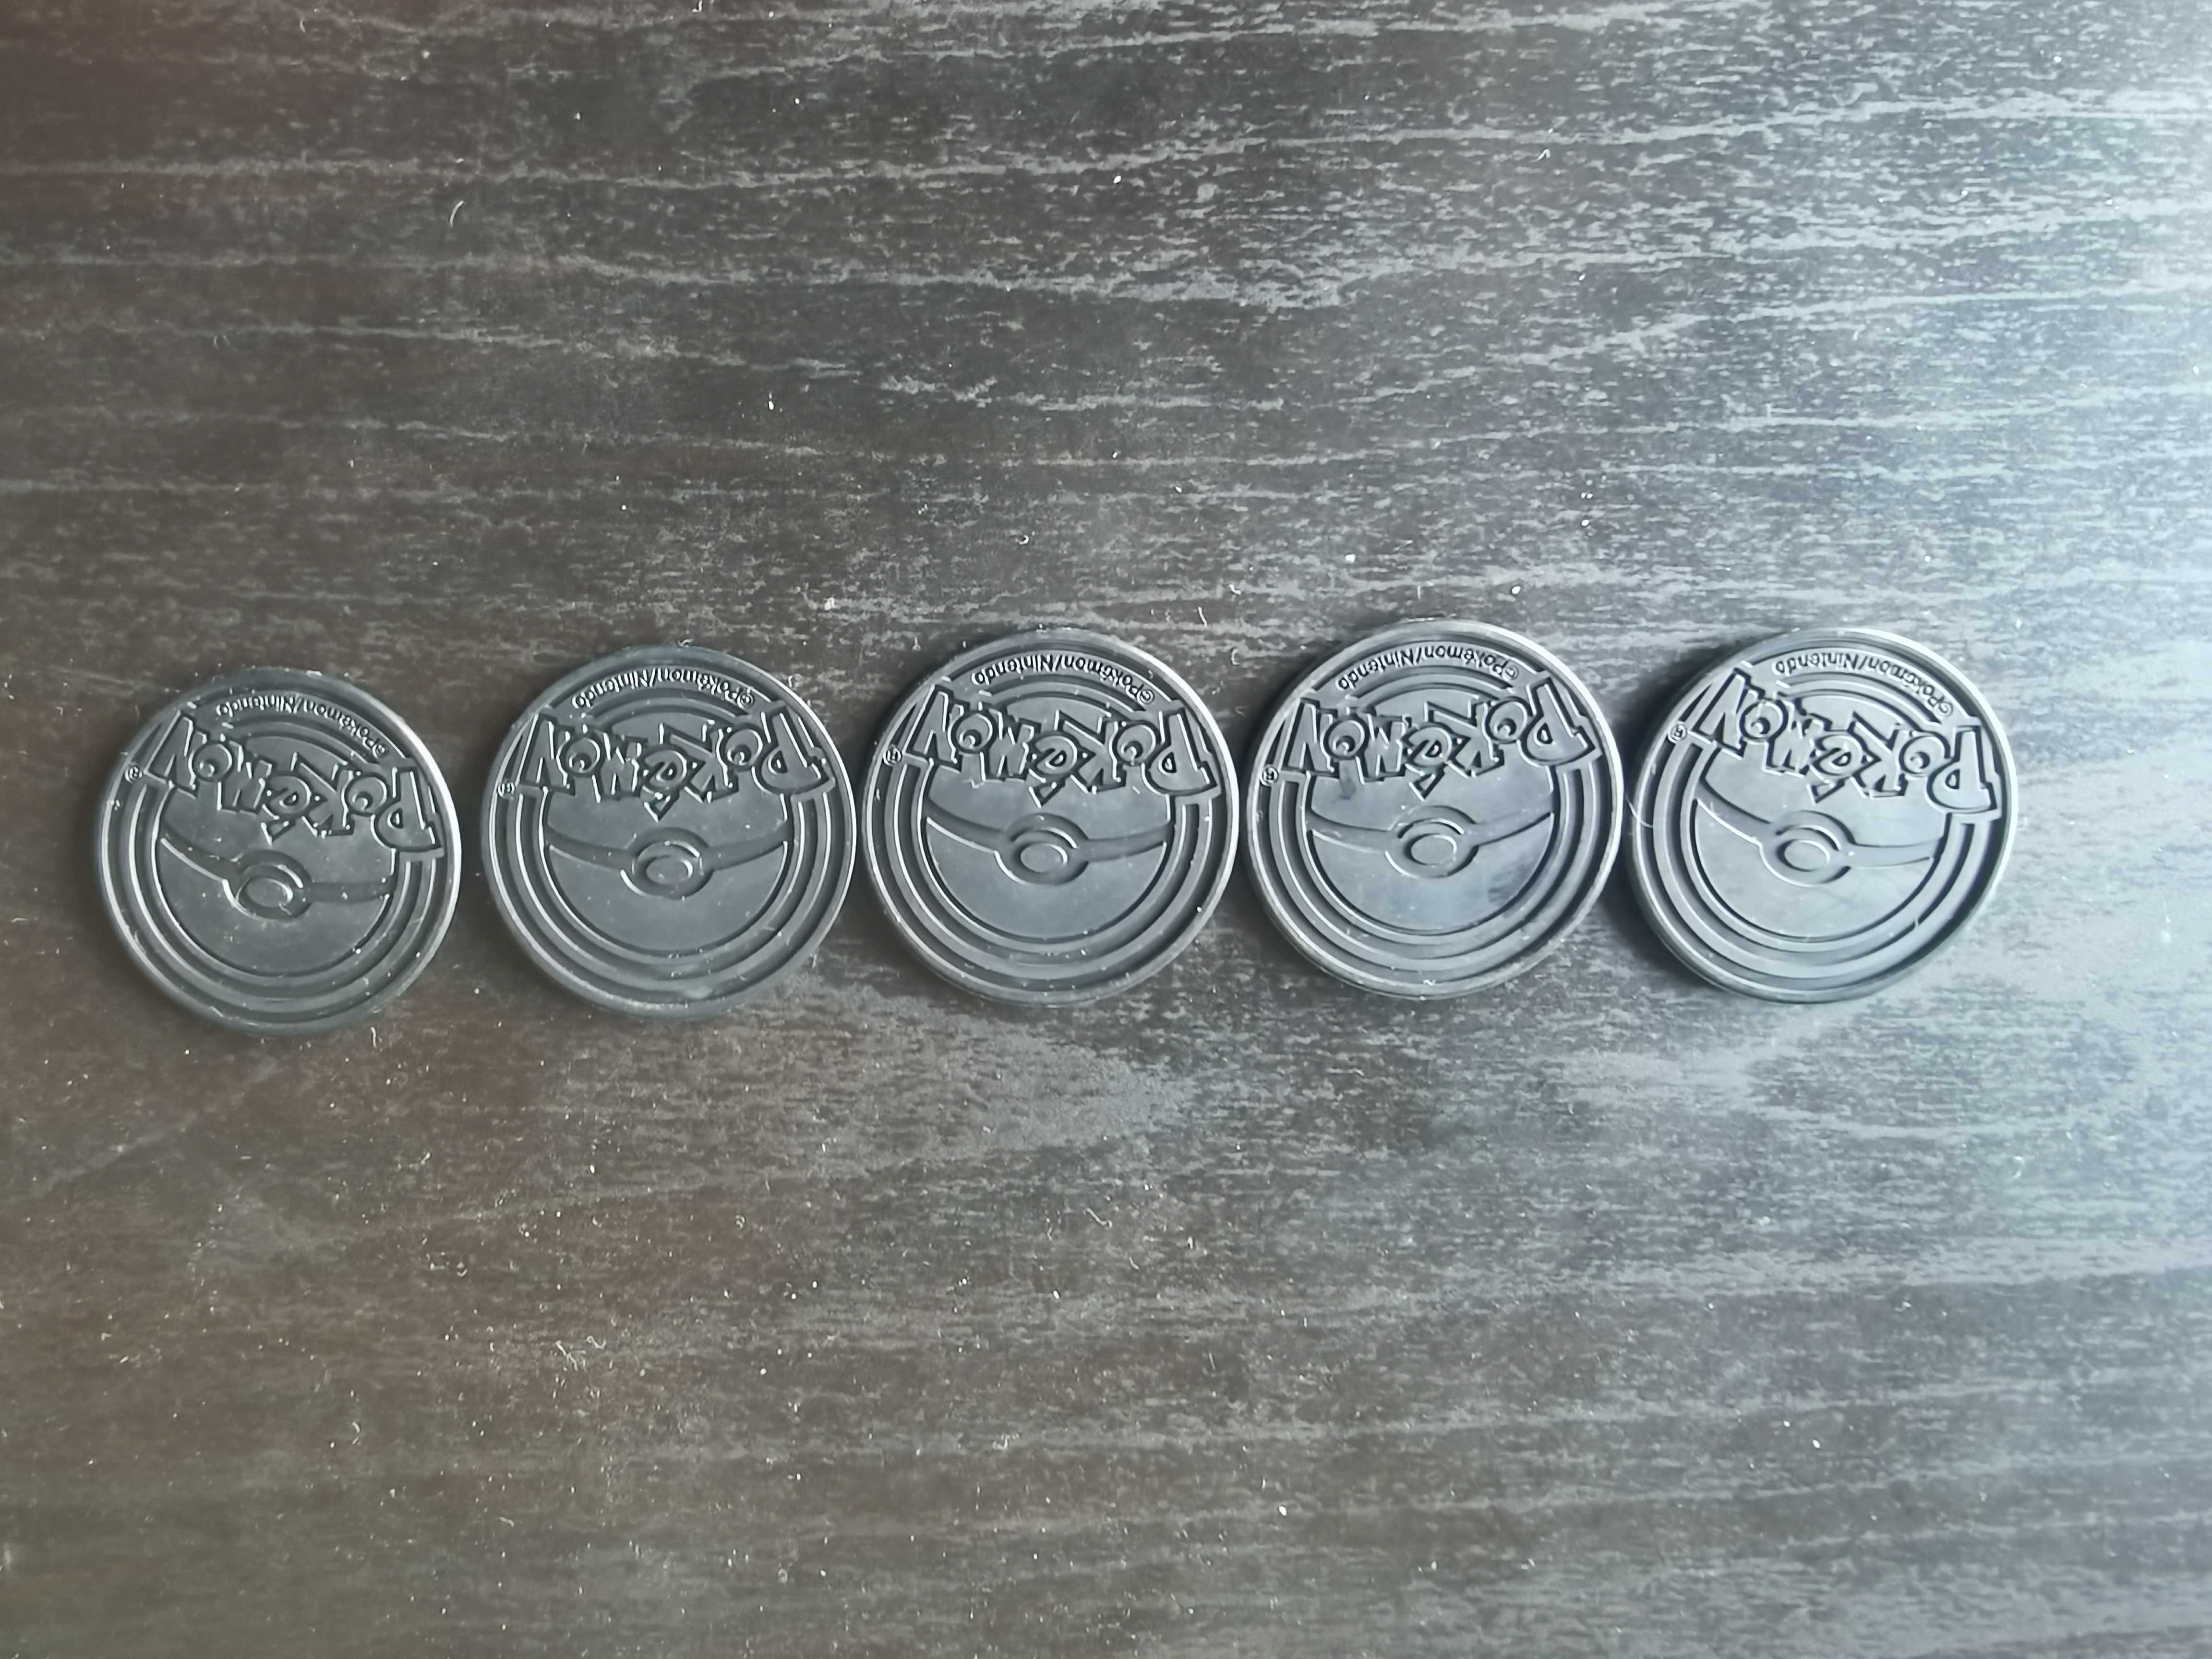 Pokémon TCG coins